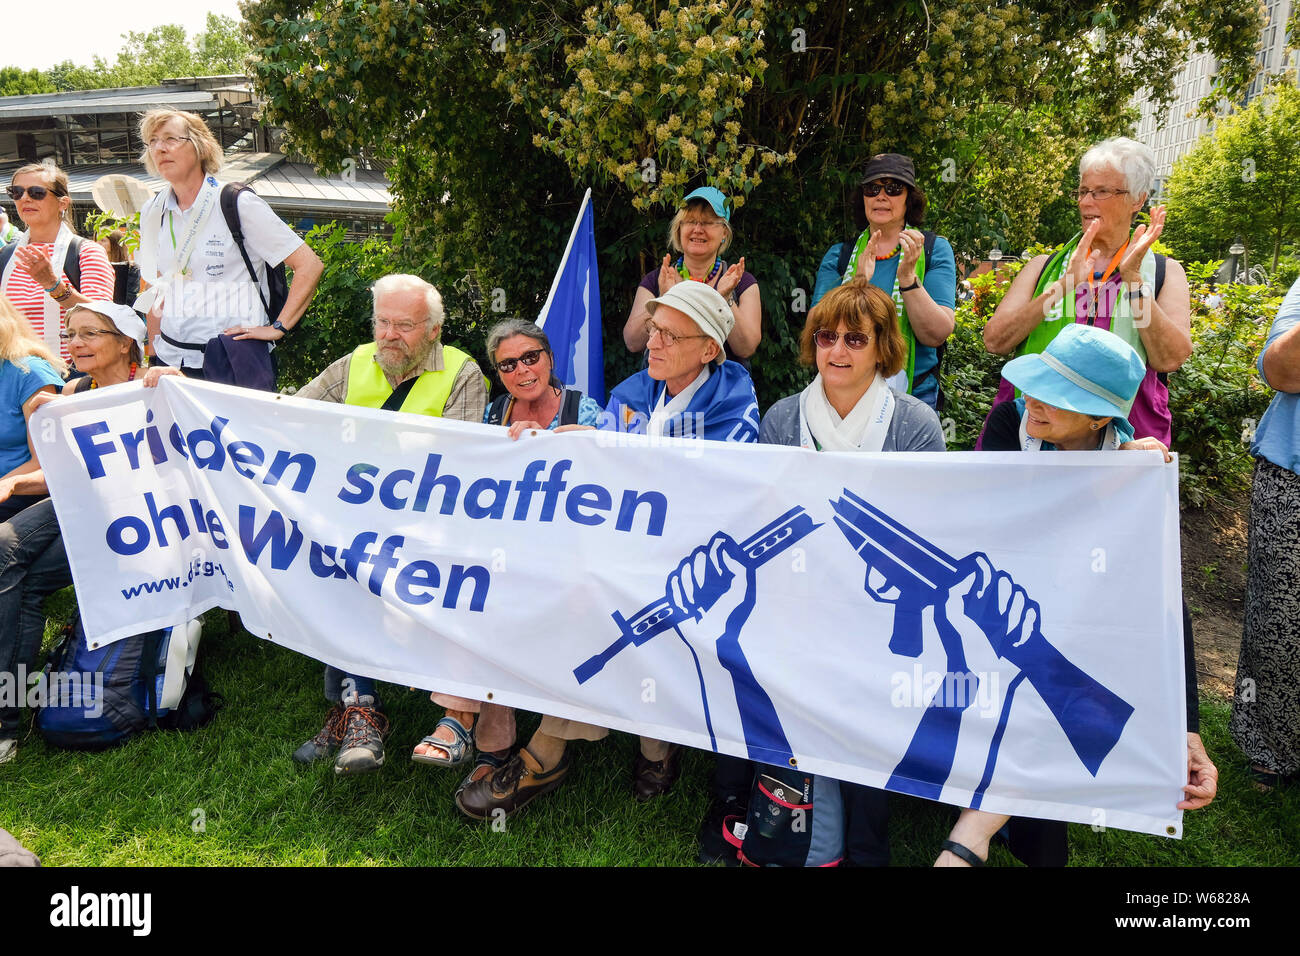 Les militants de la paix avec le drapeau avec le slogan : "La paix sans armes" au cours d'une démonstration de paix au congrès 2019 de l'Église protestante allemande à Dortmund, Allemagne Banque D'Images